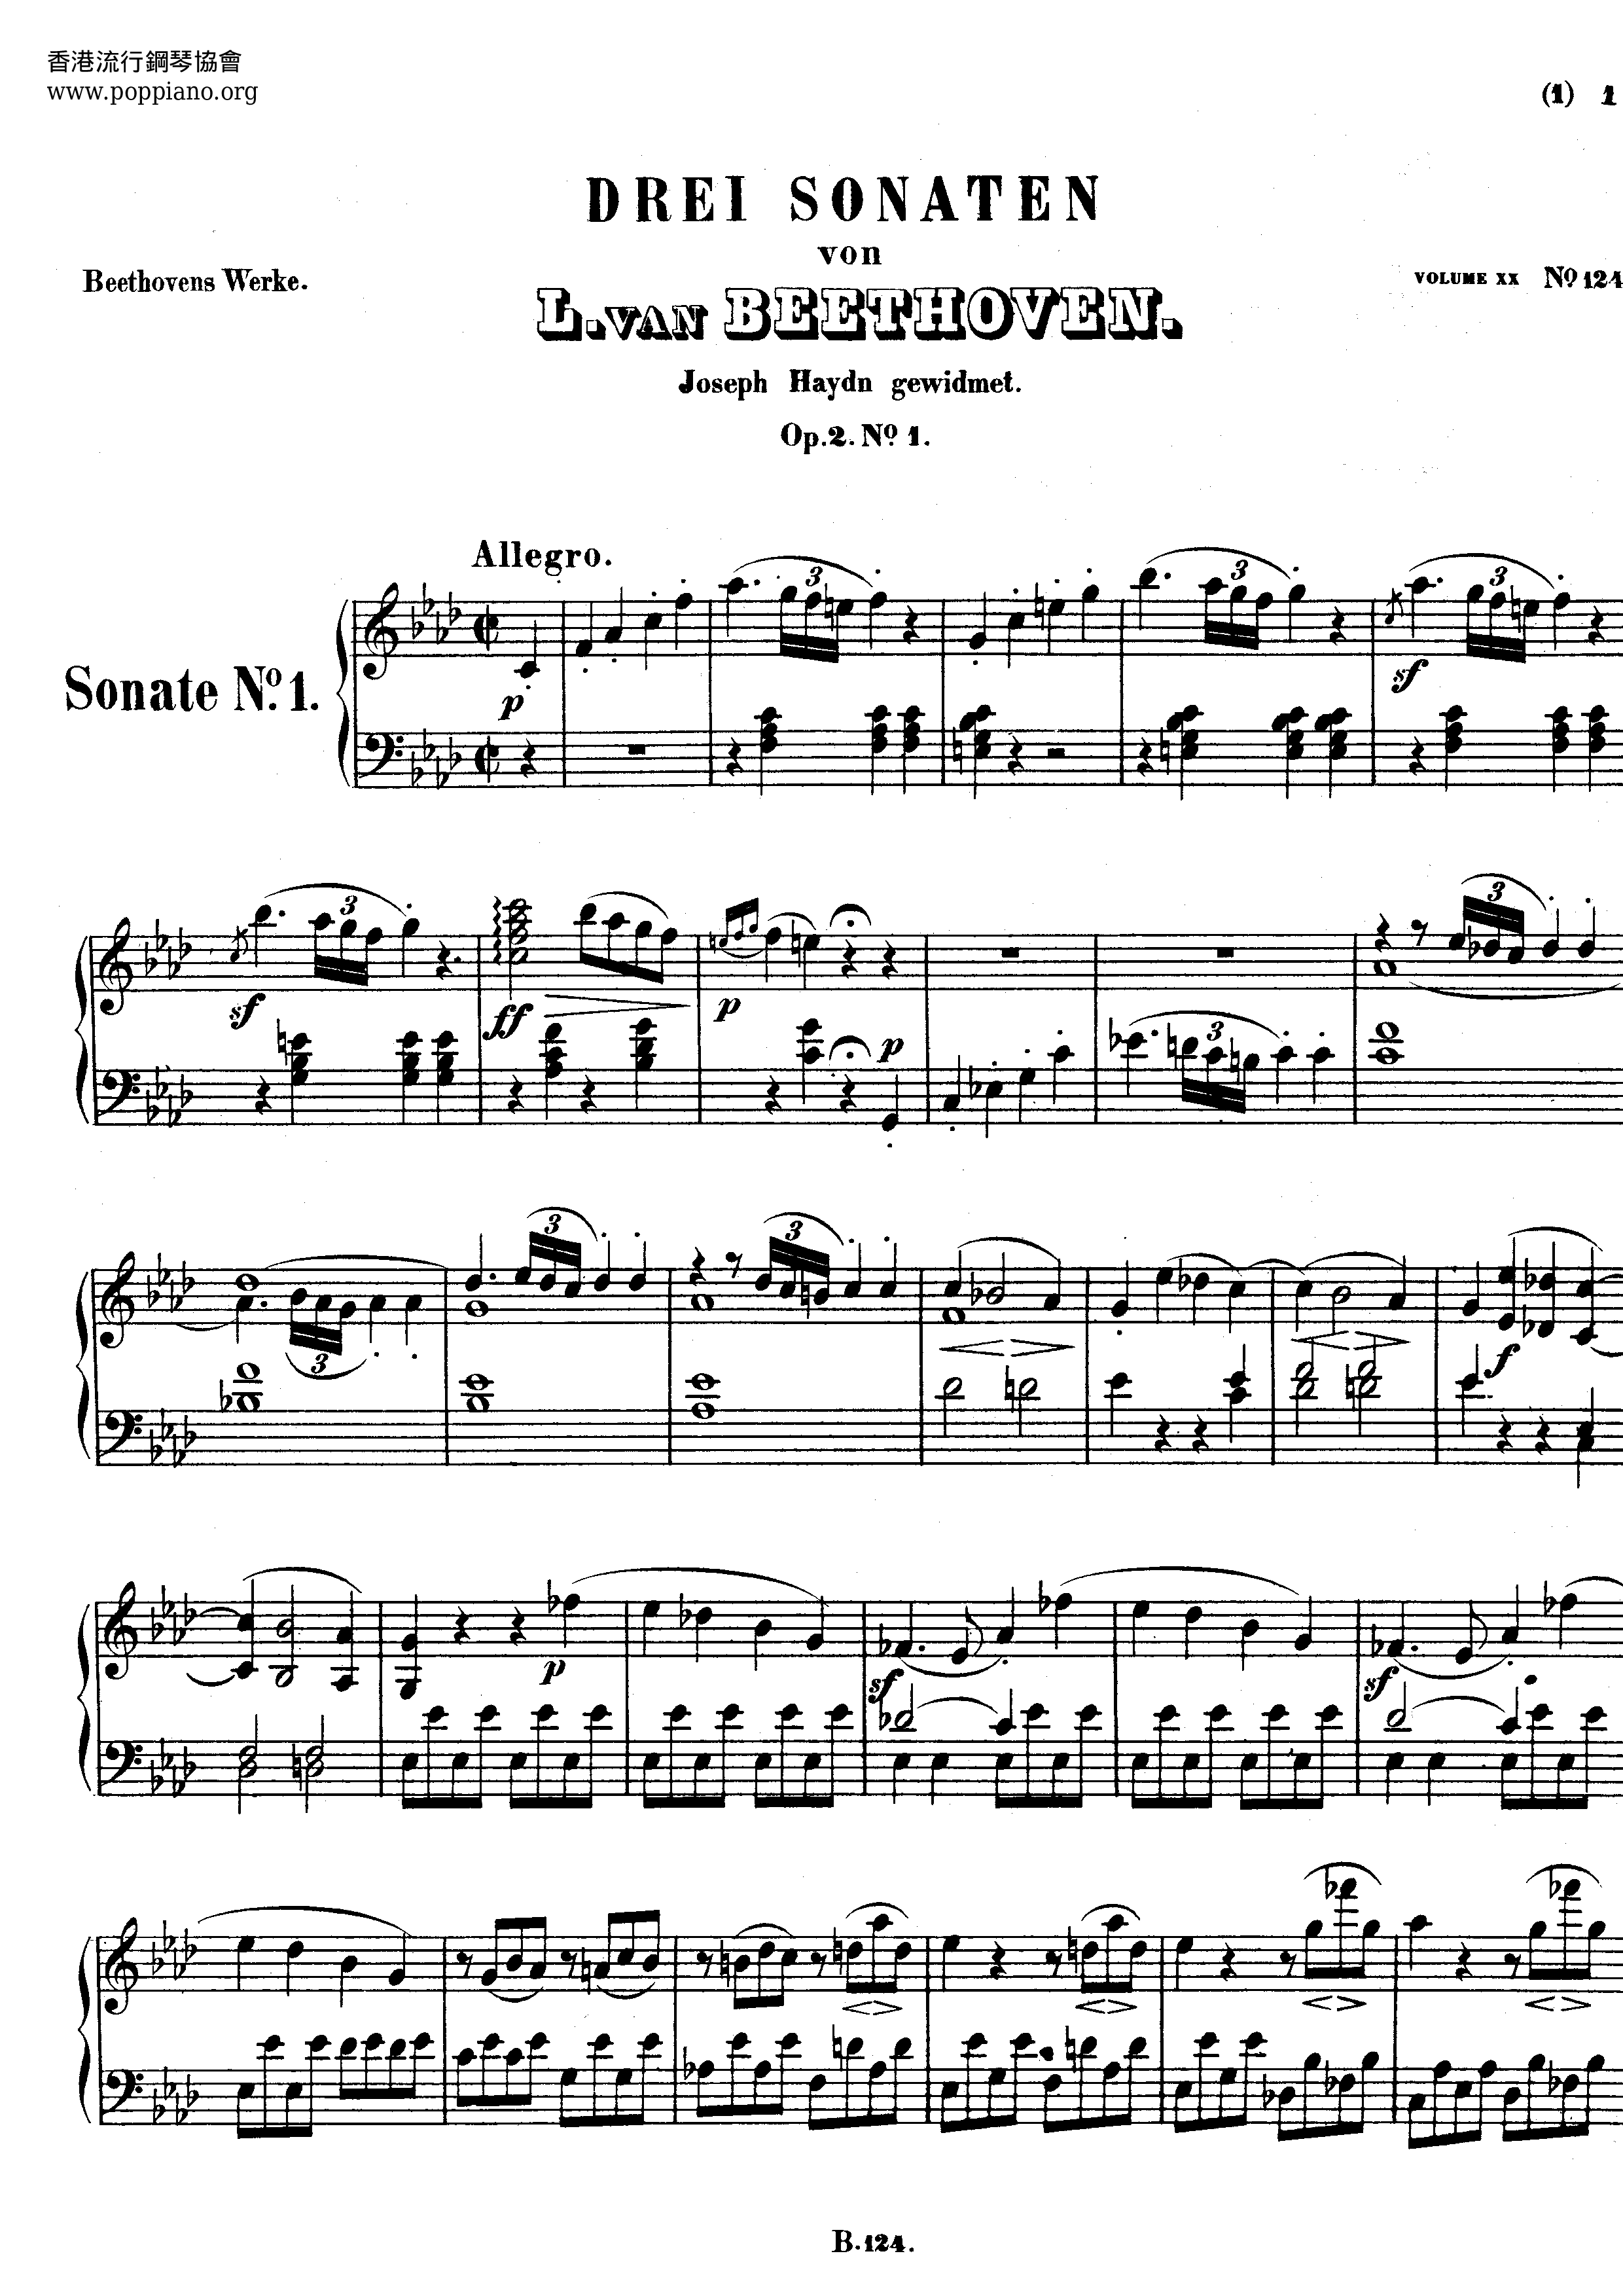 Piano Sonata Op. 2 Score